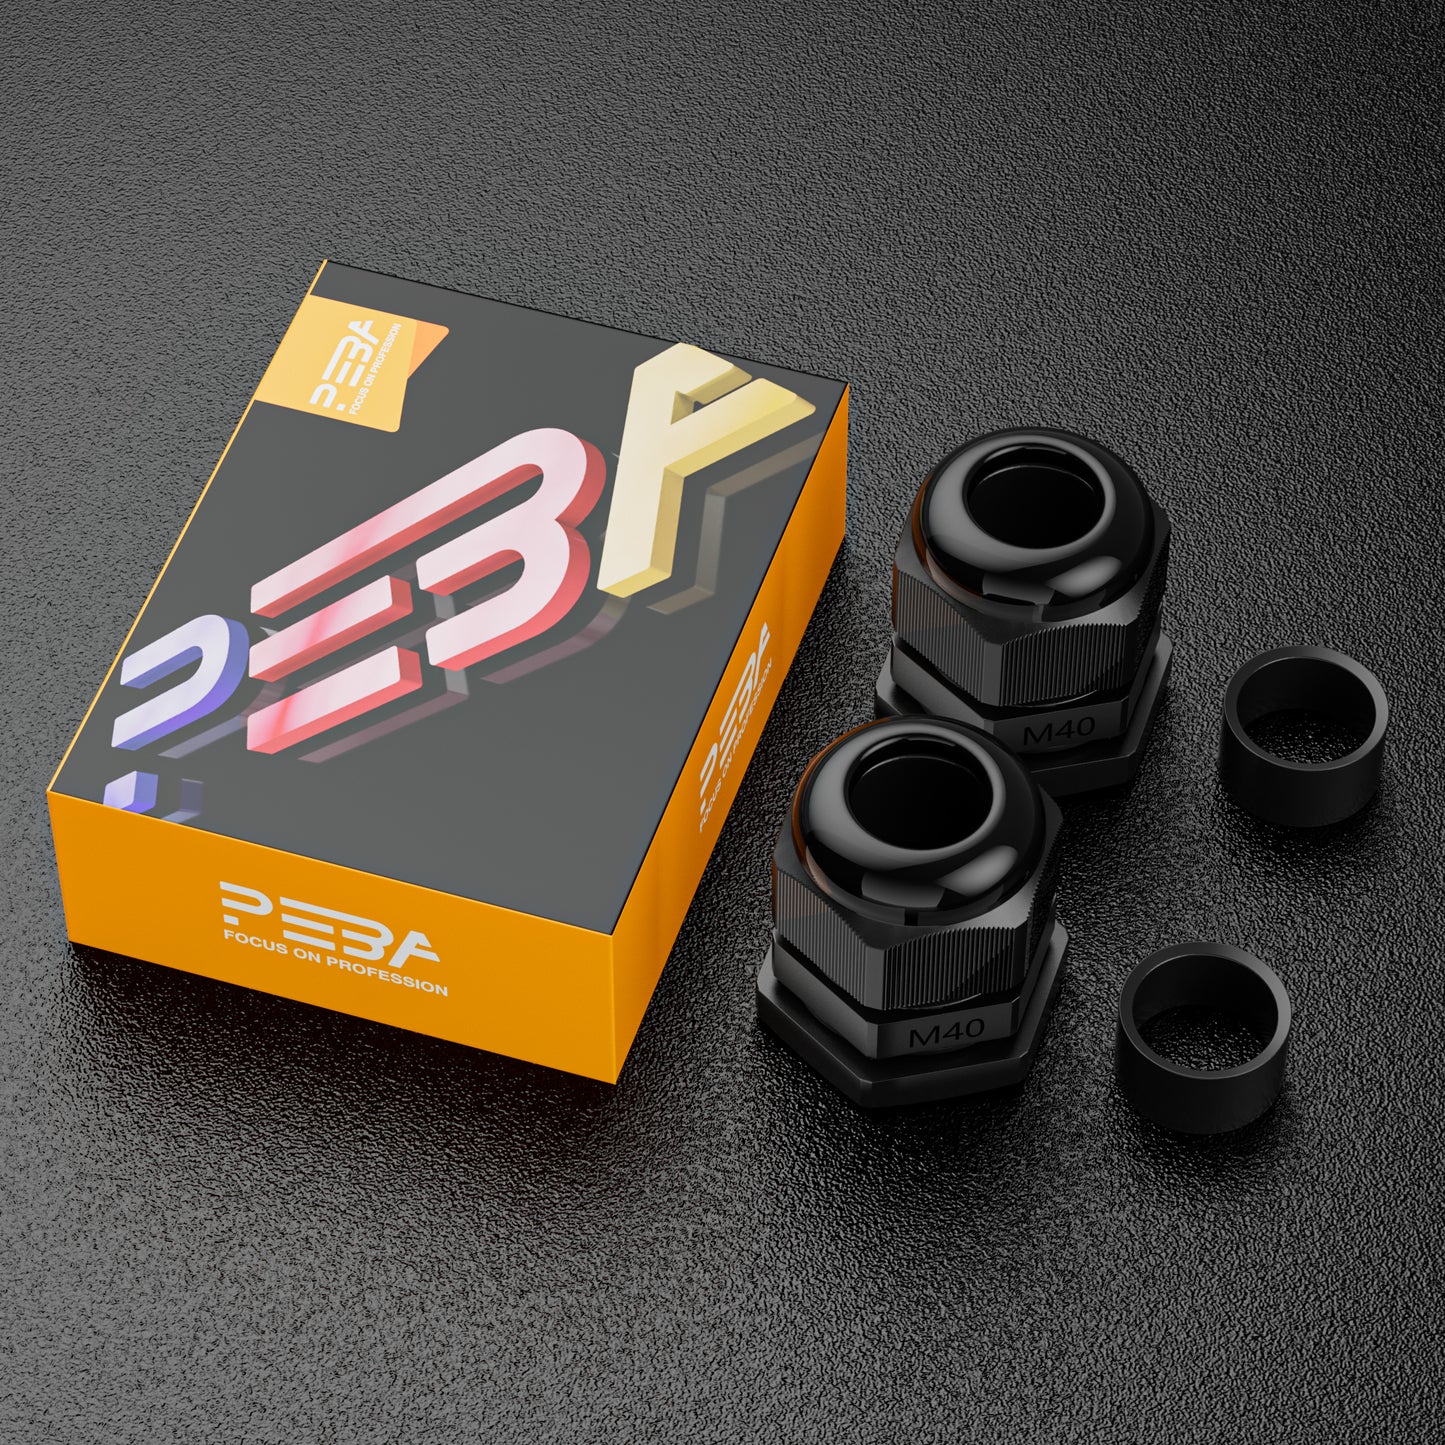 PEBA® Presse-étoupe Noir M32 x 1,5 et presse-étoupe M40 x 1,5